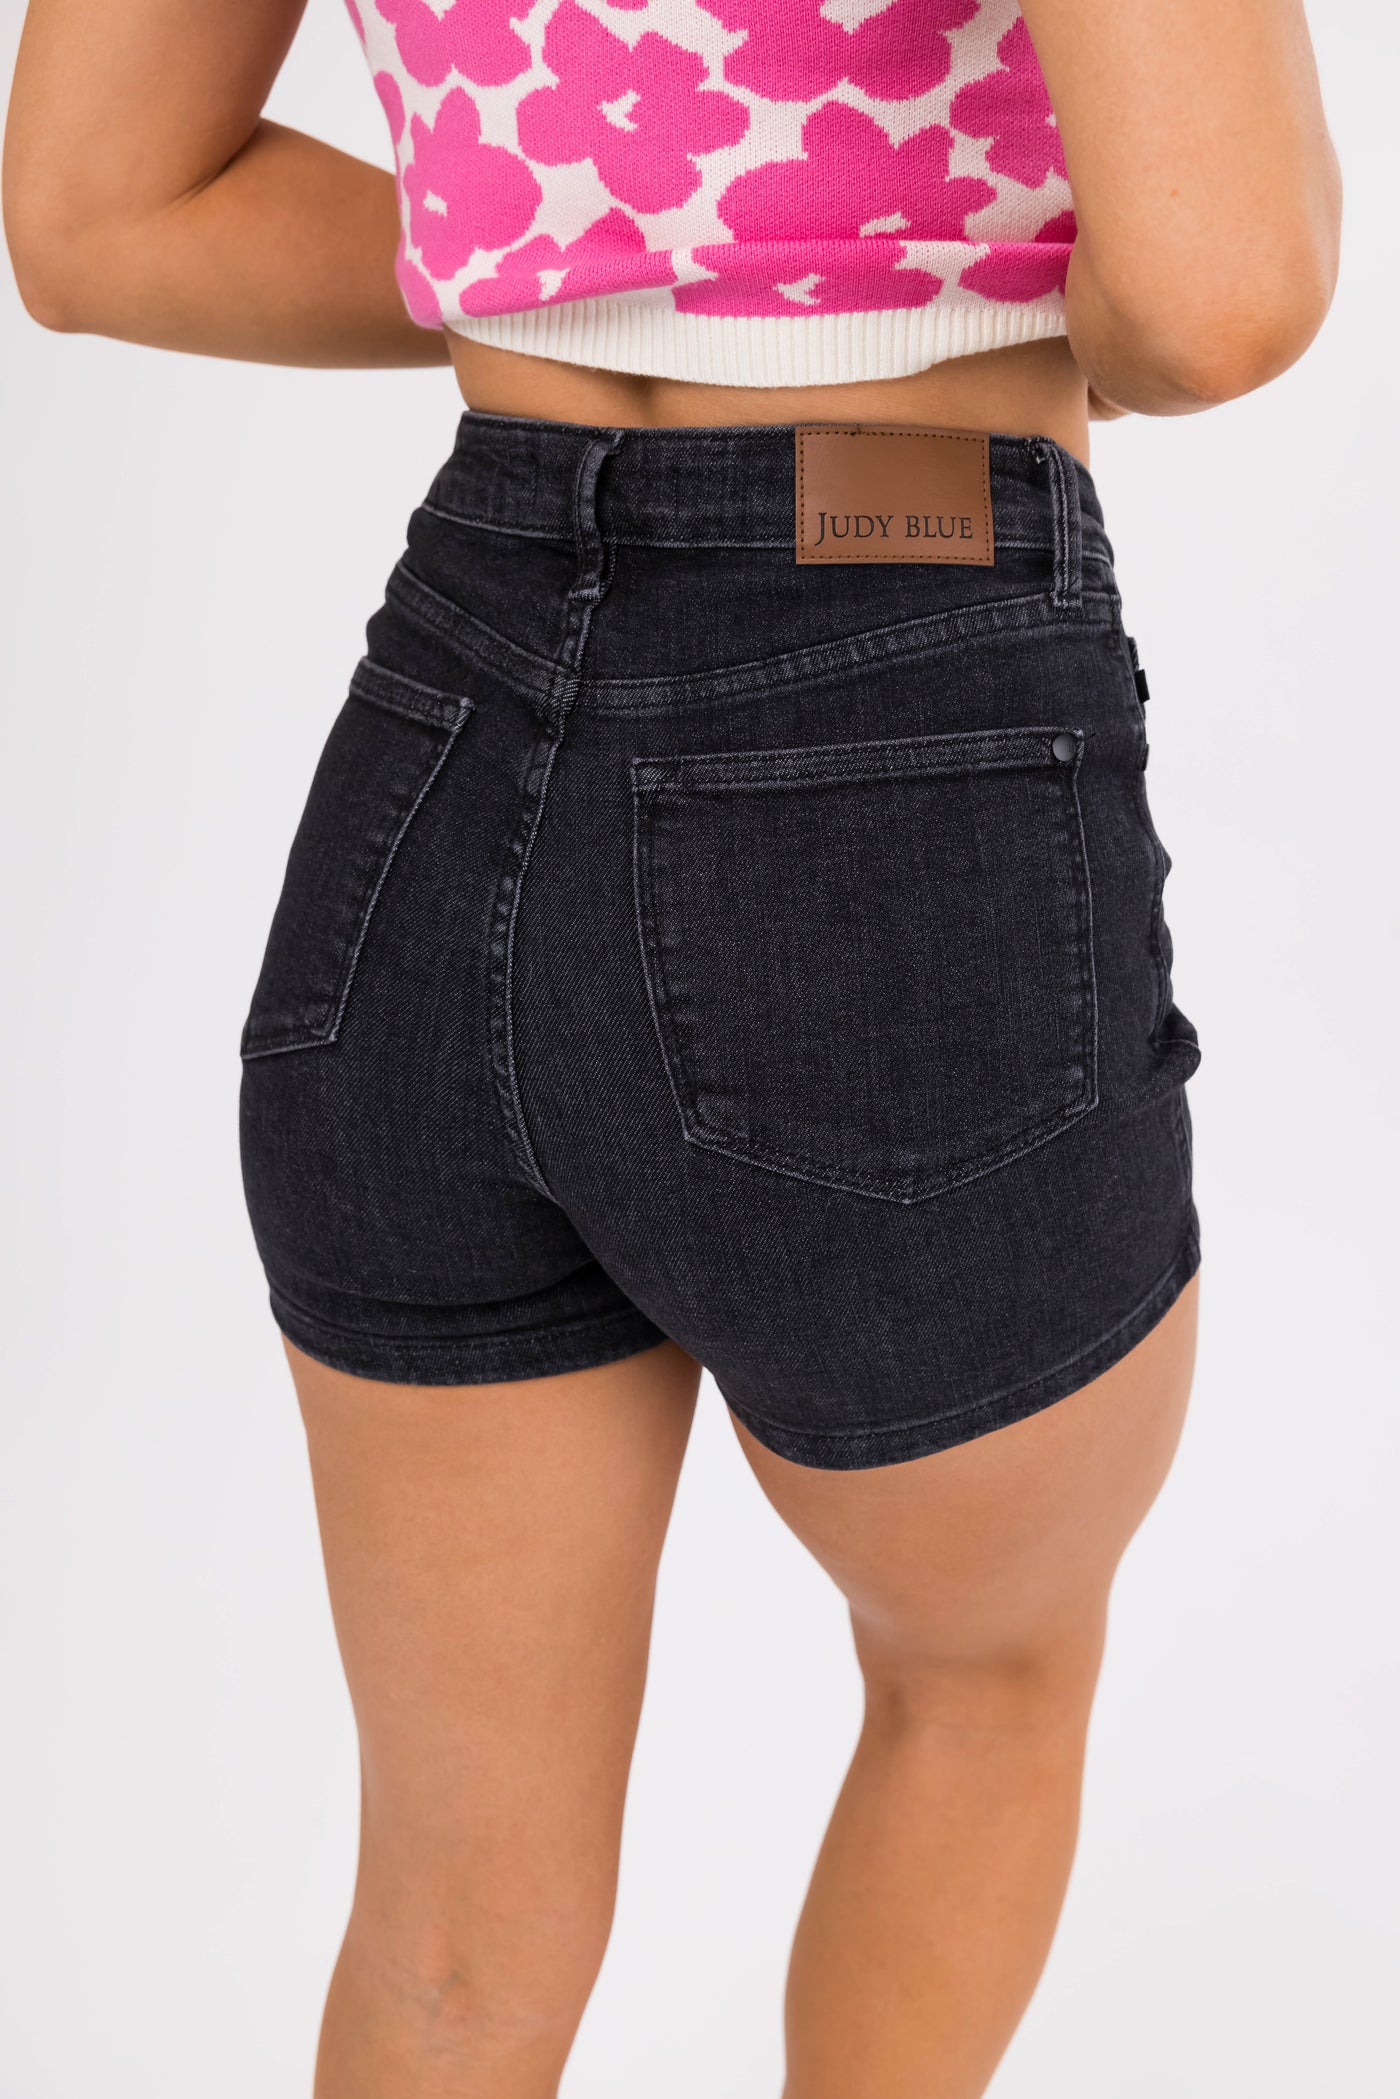 Judy Blue Black Tummy Control Mid Thigh Shorts